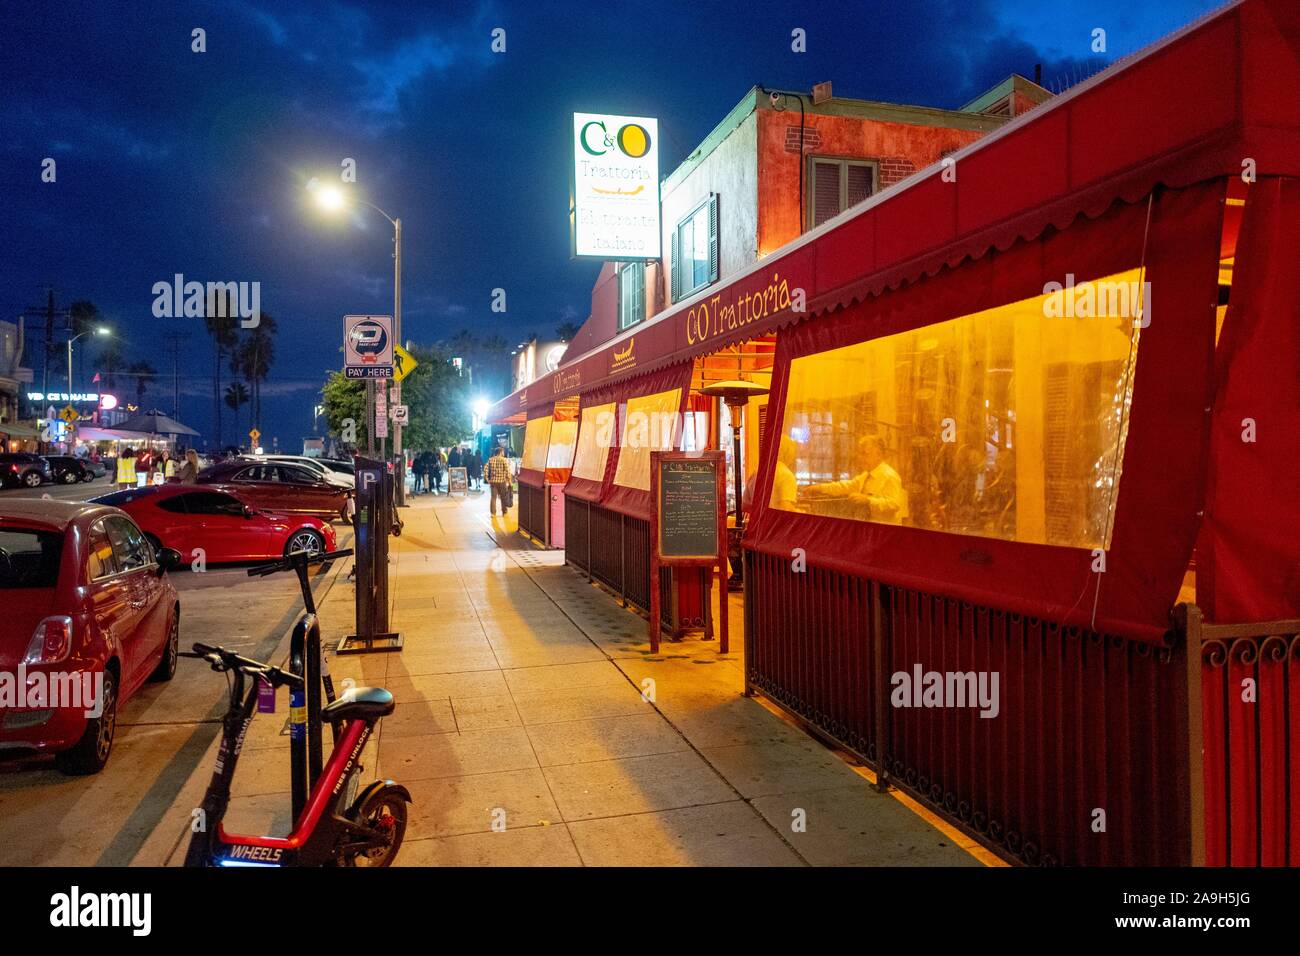 Los restaurantes son visibles en la noche a lo largo de Washington Blvd, una de las calles principales de Venecia, la ciudad de Los Angeles, California, 27 de octubre de 2019. () Foto de stock